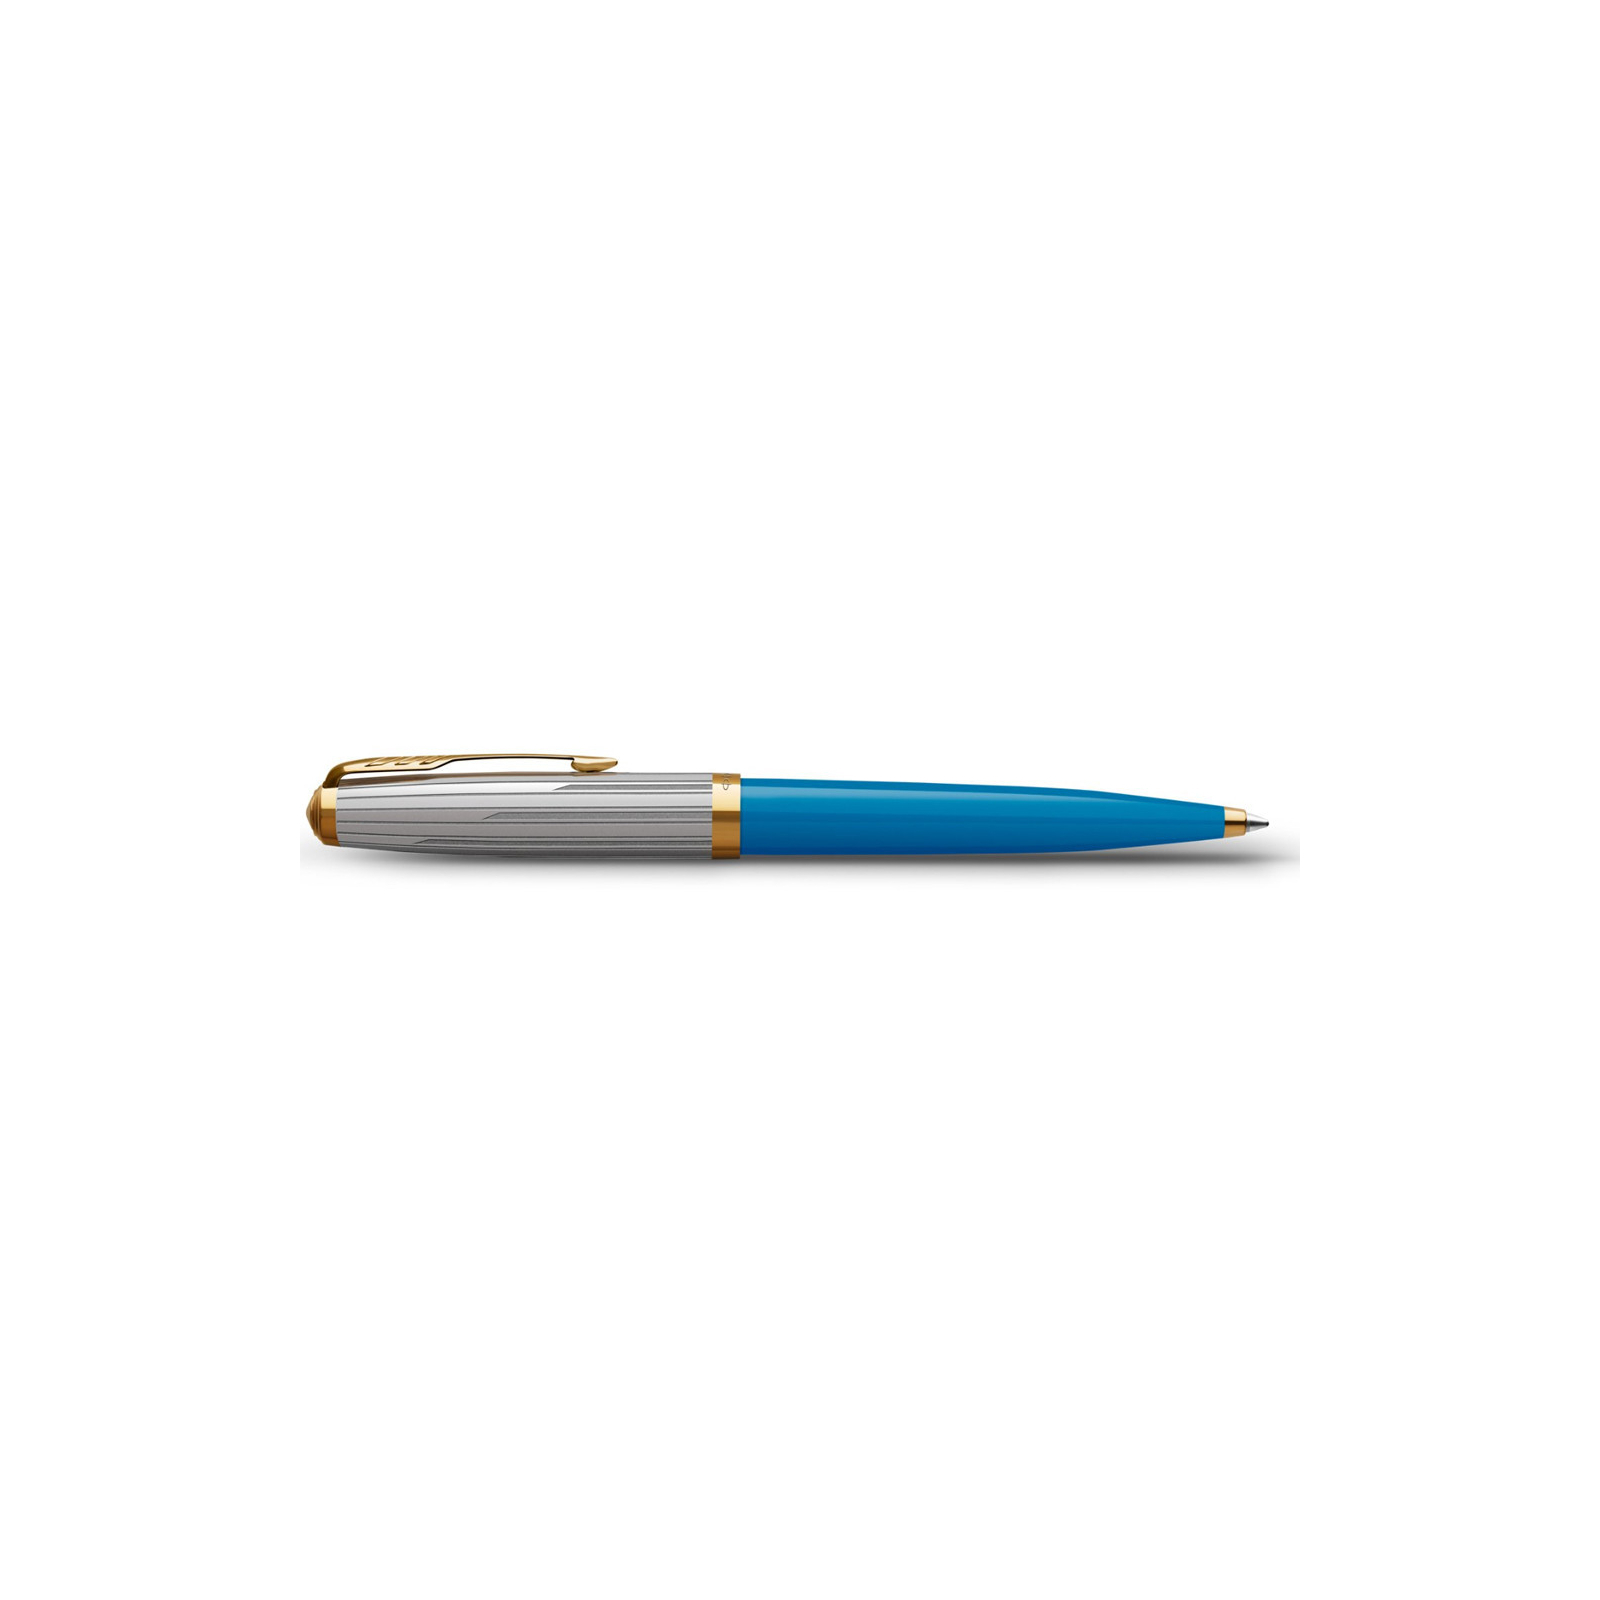 Ручка шариковая Parker 51 Premium Turquoise GT BP (56 432) изображение 3